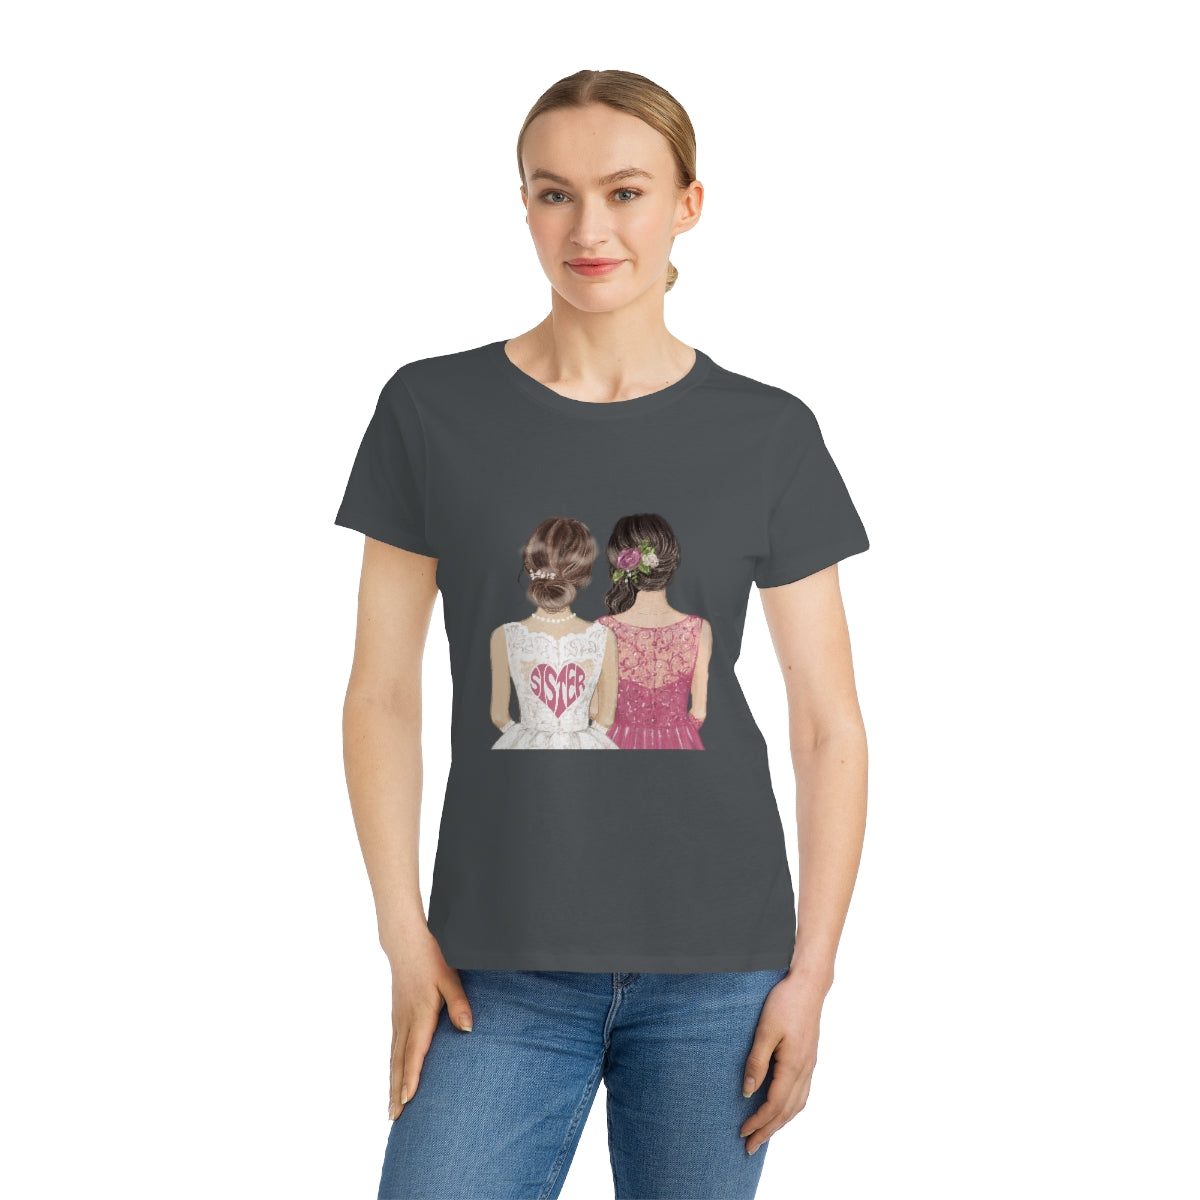 SISTER SHIRT, Organic Women's Classic T-Shirt, Echo Shirt for Women, Gift for Sisters